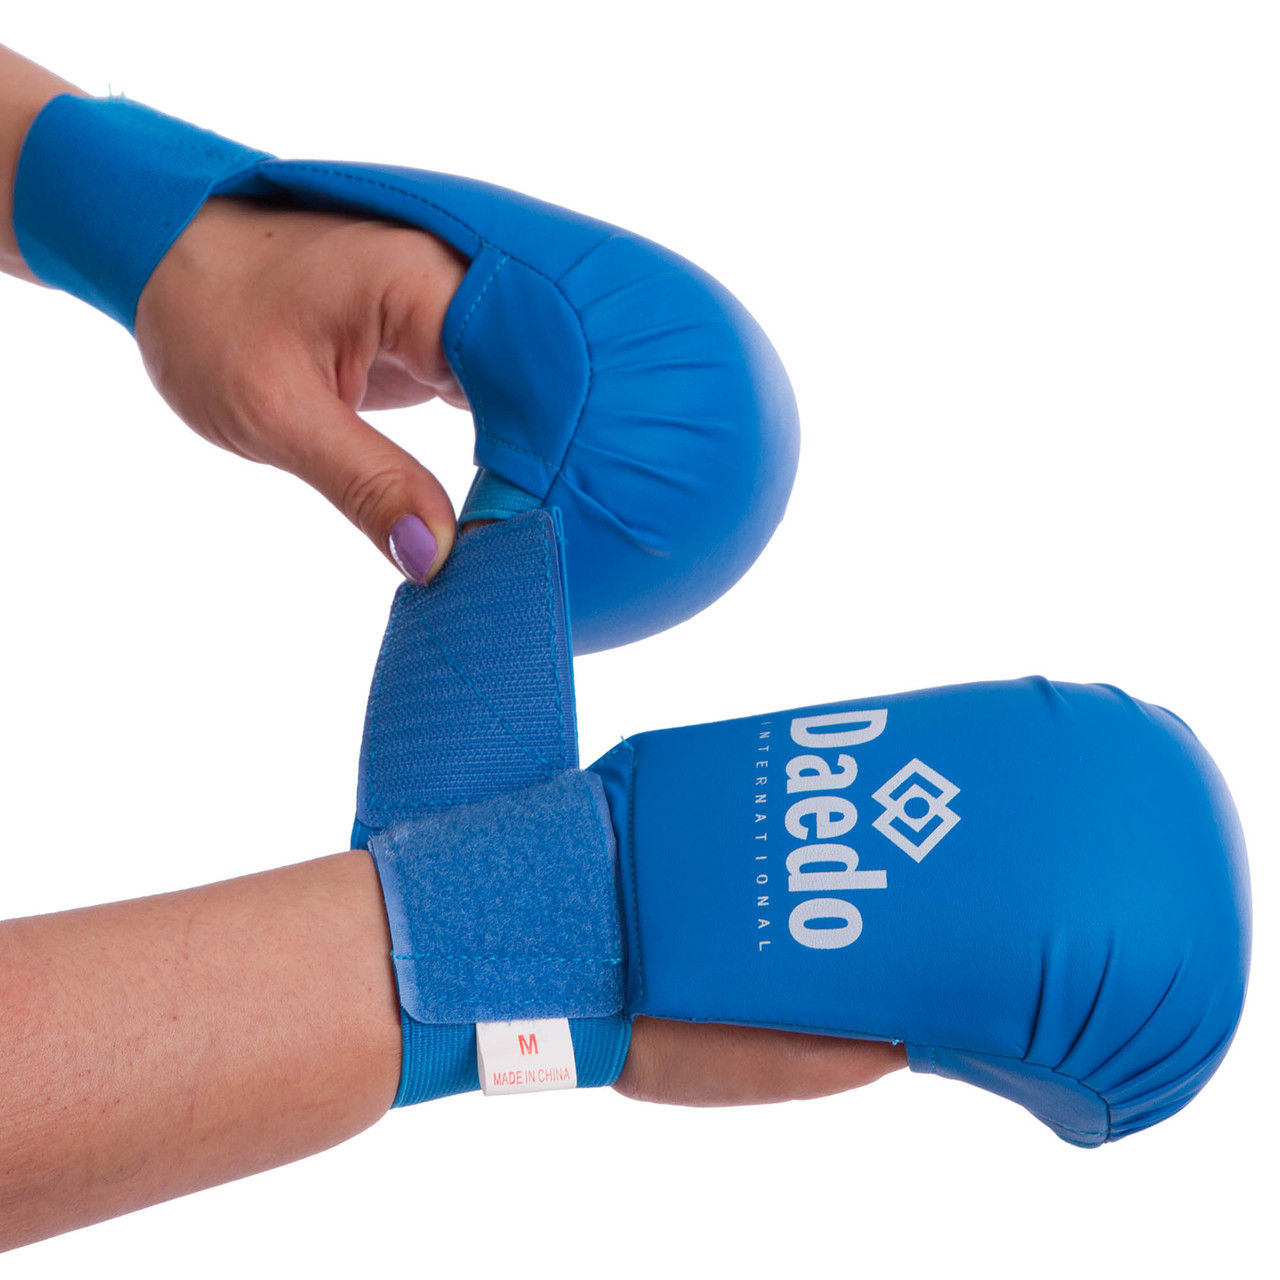 

Перчатки для карате Daedo Heroe 5076 размер S Blue